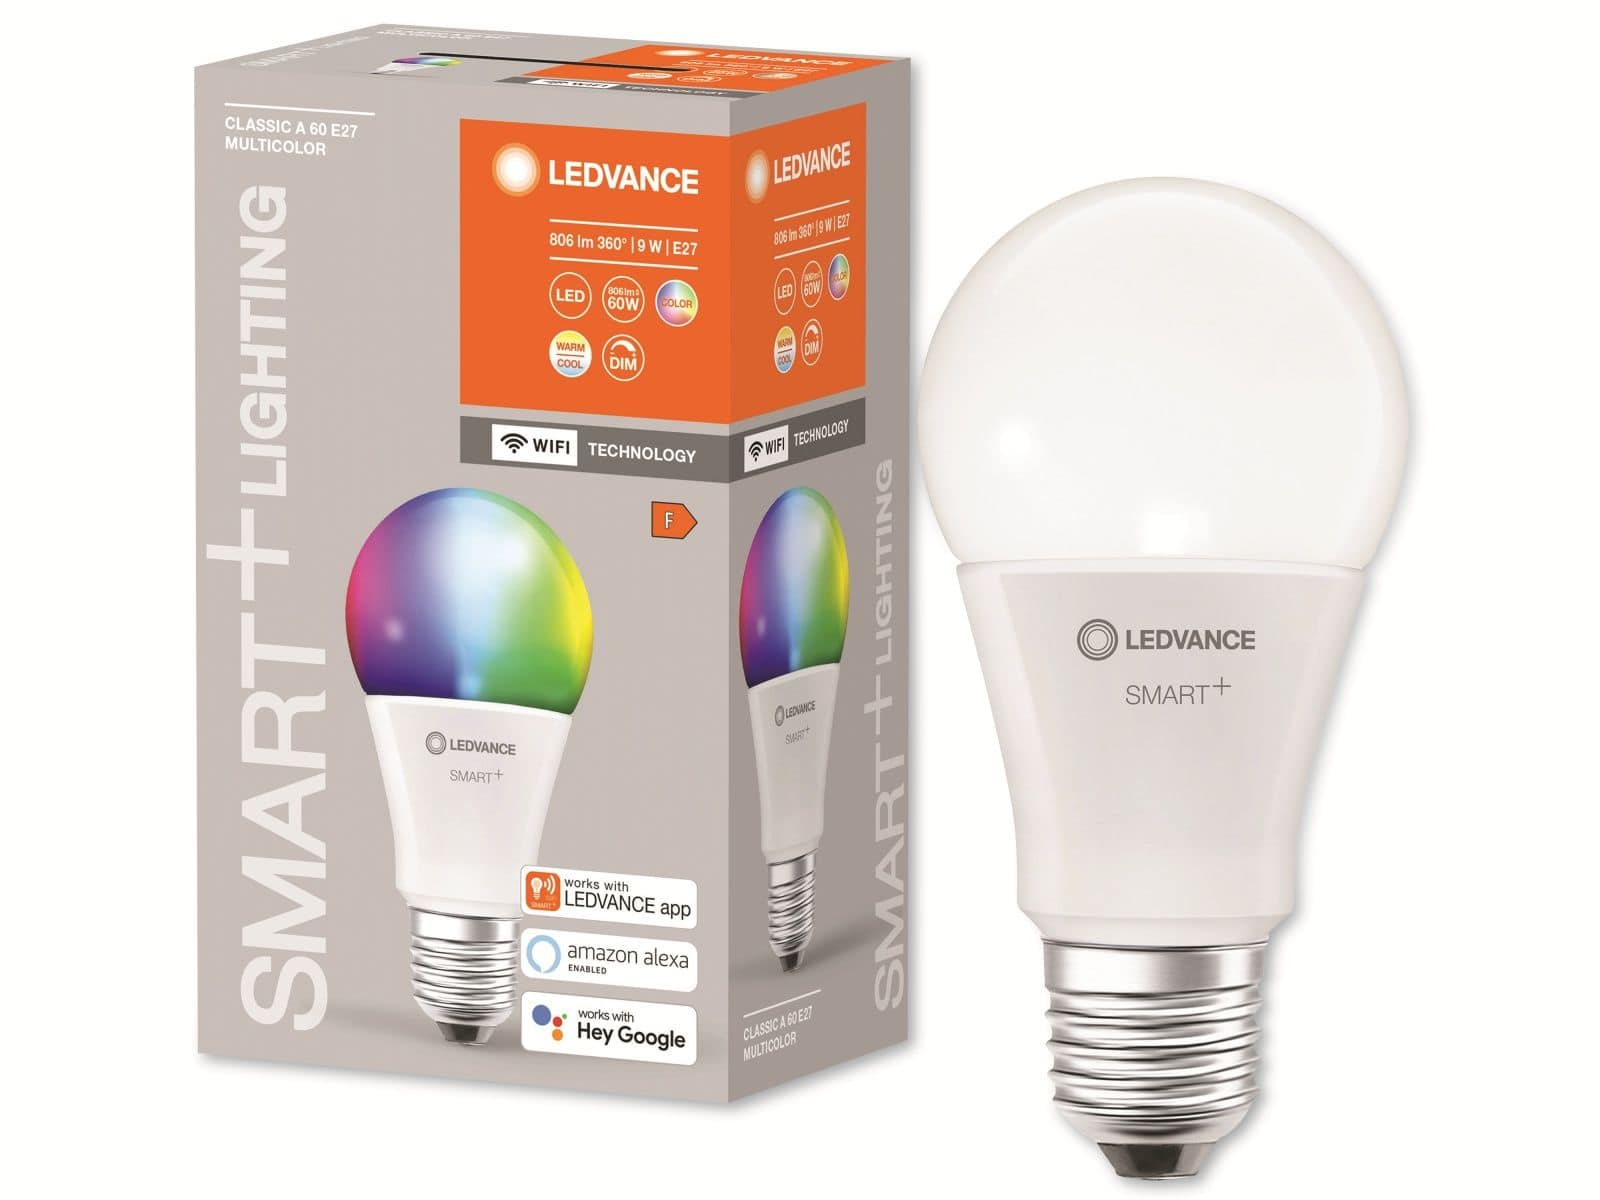 LED SMART+ RGBW Lampe LEDVANCE WiFi Classic